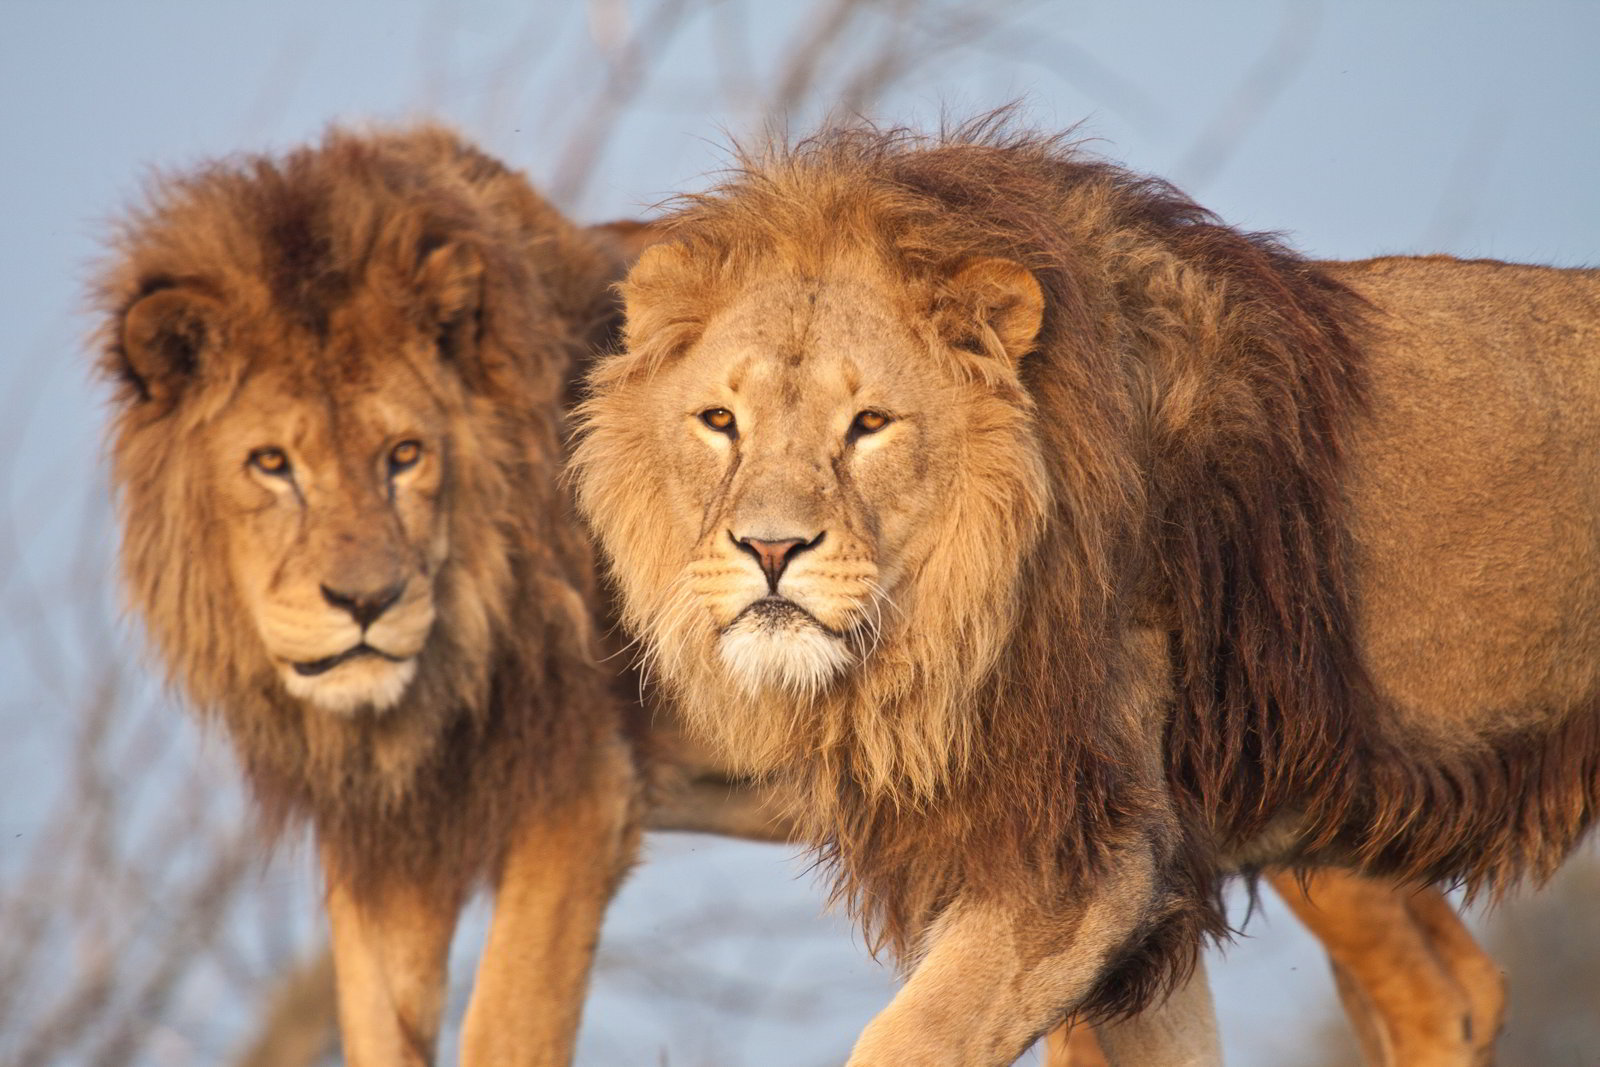 Hình nền sư tử trong thiên nhiên hoang dã đẹp nhất thế giới